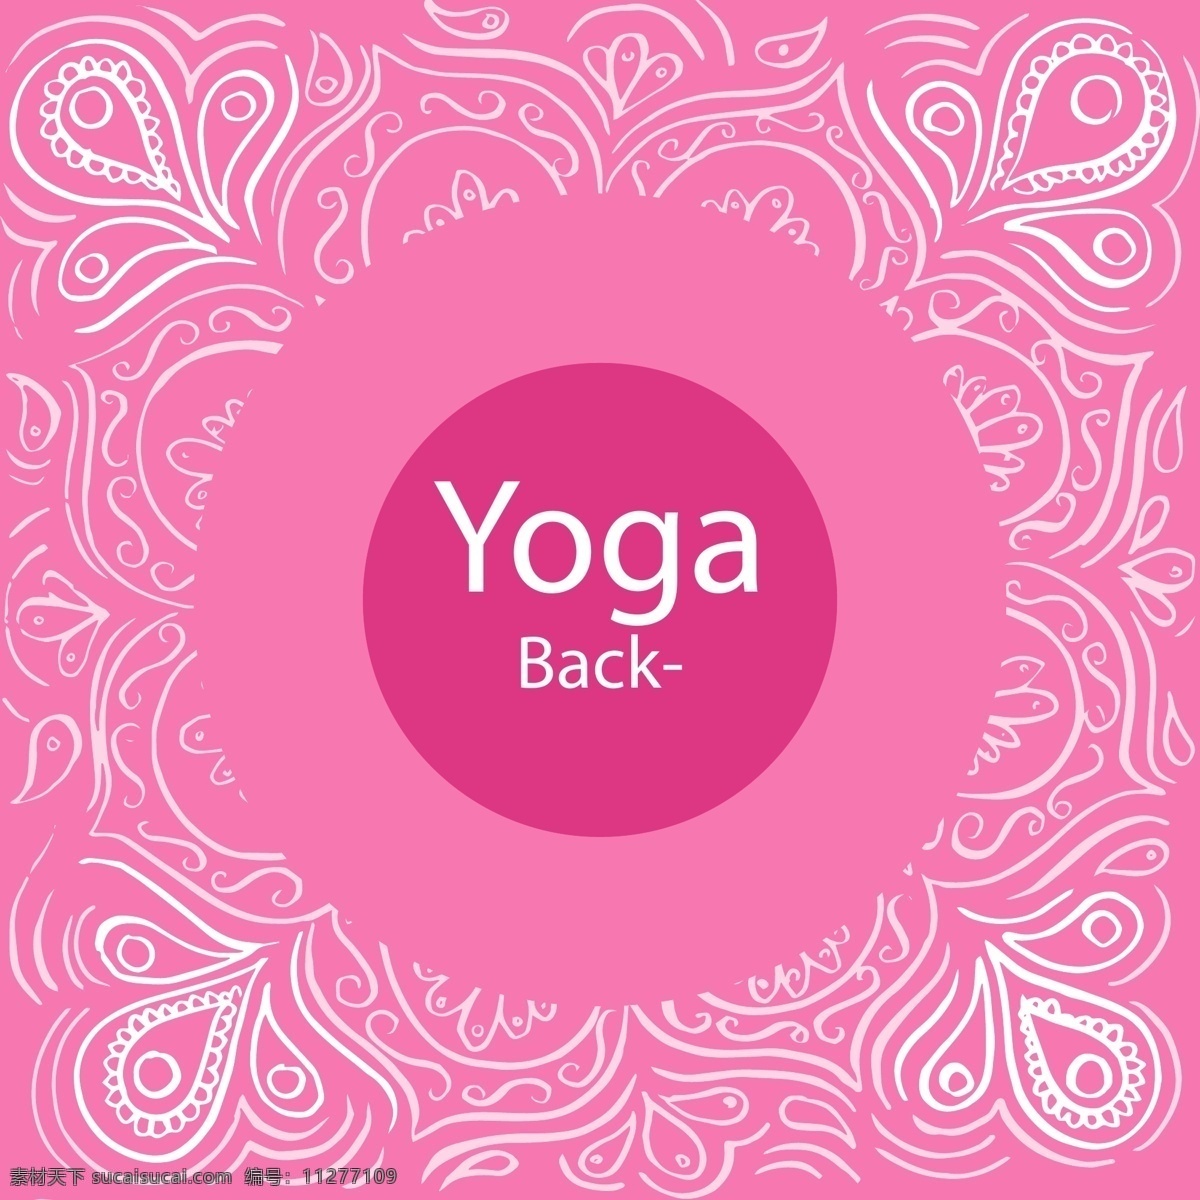 红色瑜伽背景 背景 抽象 手 健康 瑜伽 手绘 饰品 粉红色 形状 可爱的 人 绘画 和平 运动 装饰 平衡 心灵 粉色